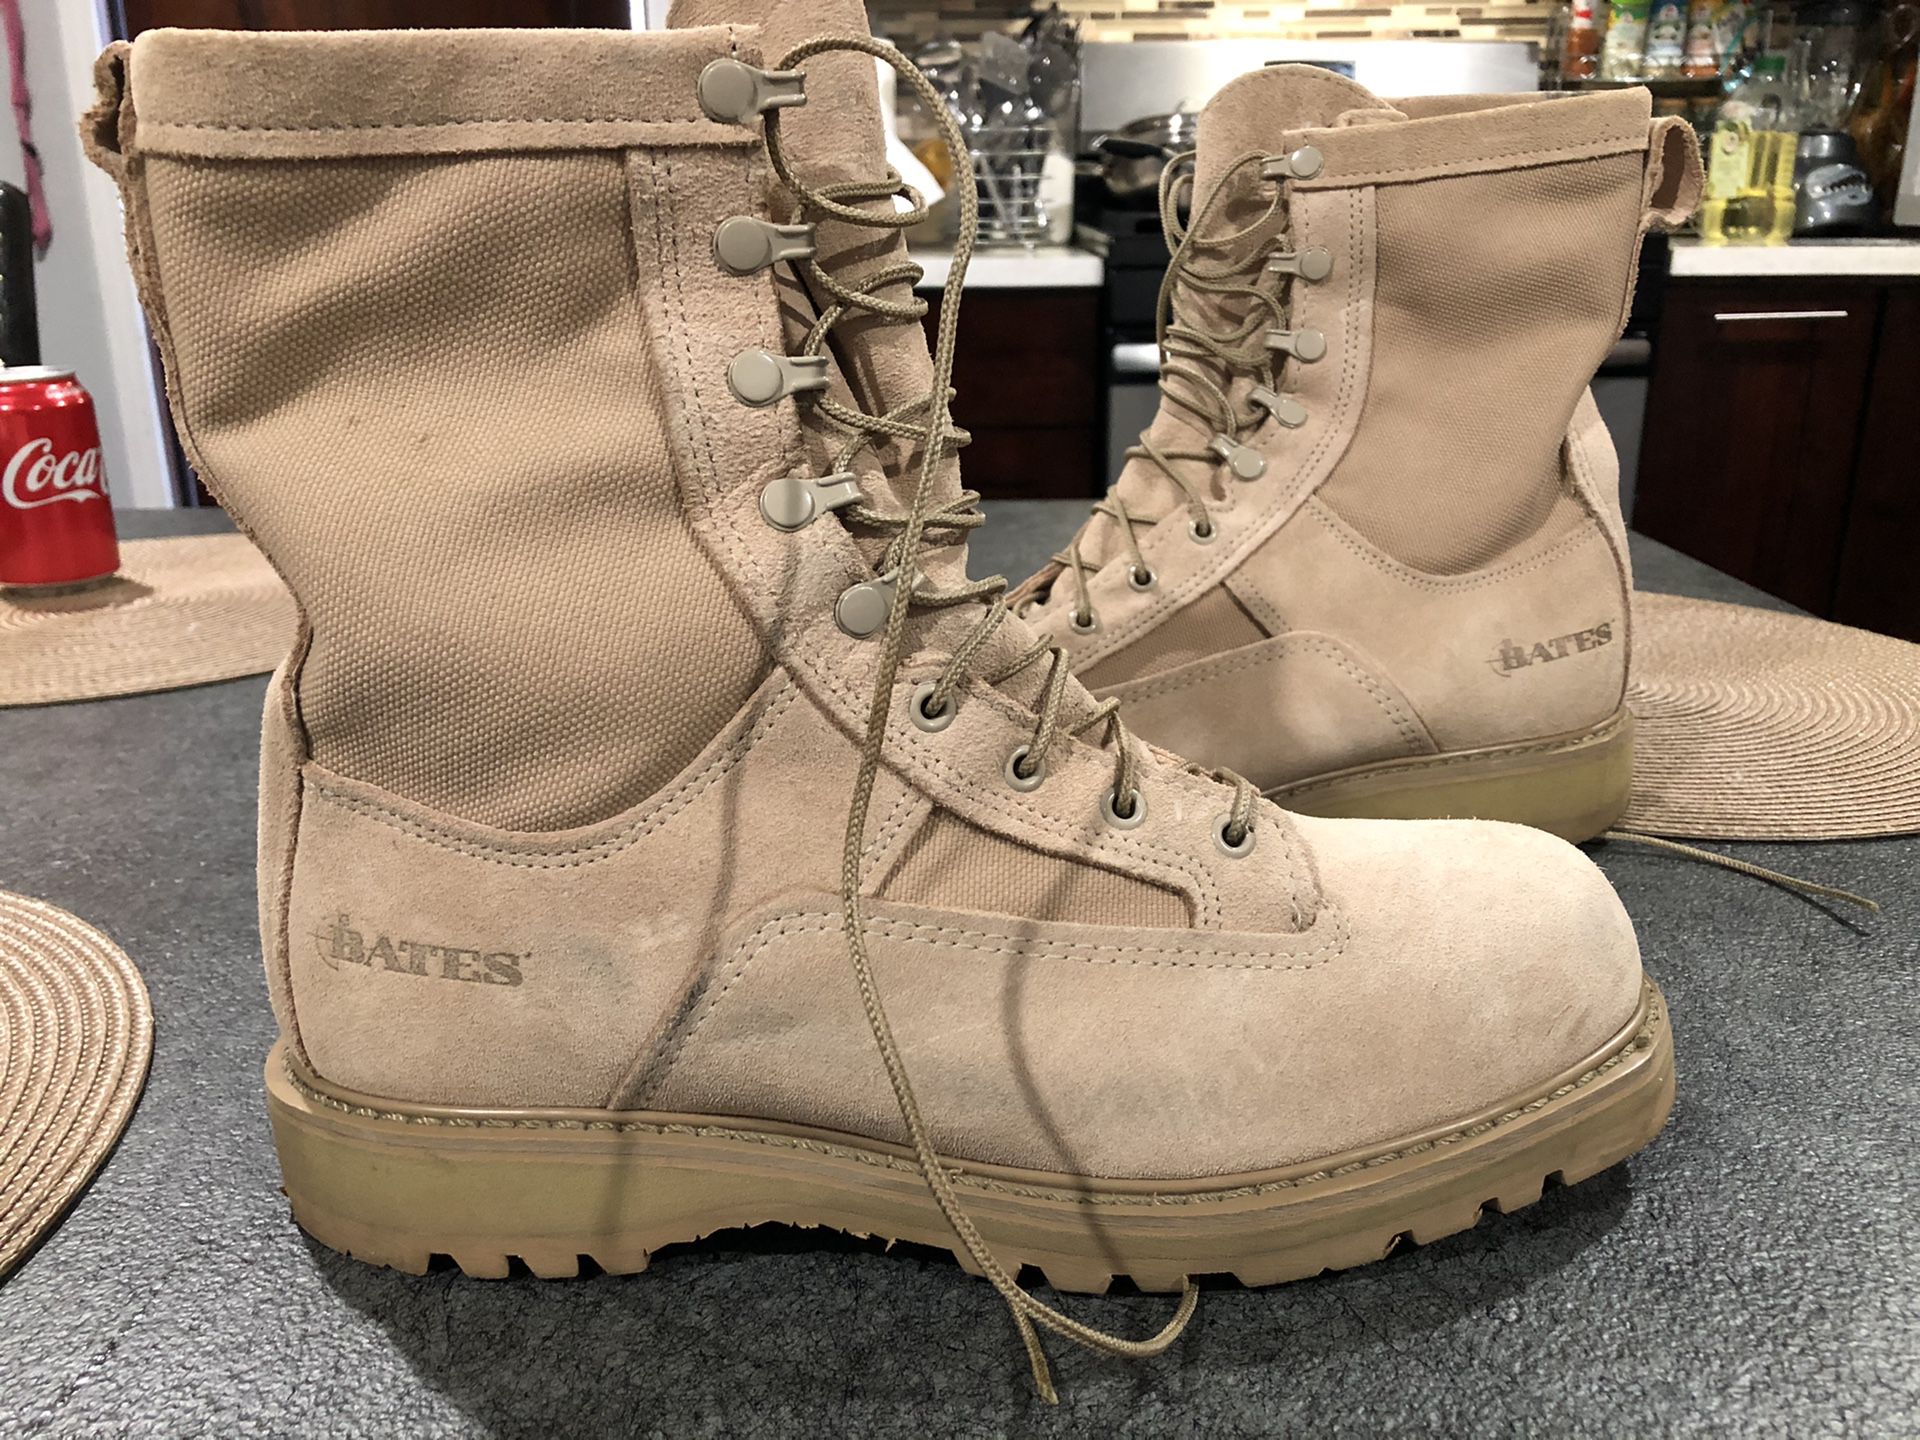 Bates Combat boots size 10